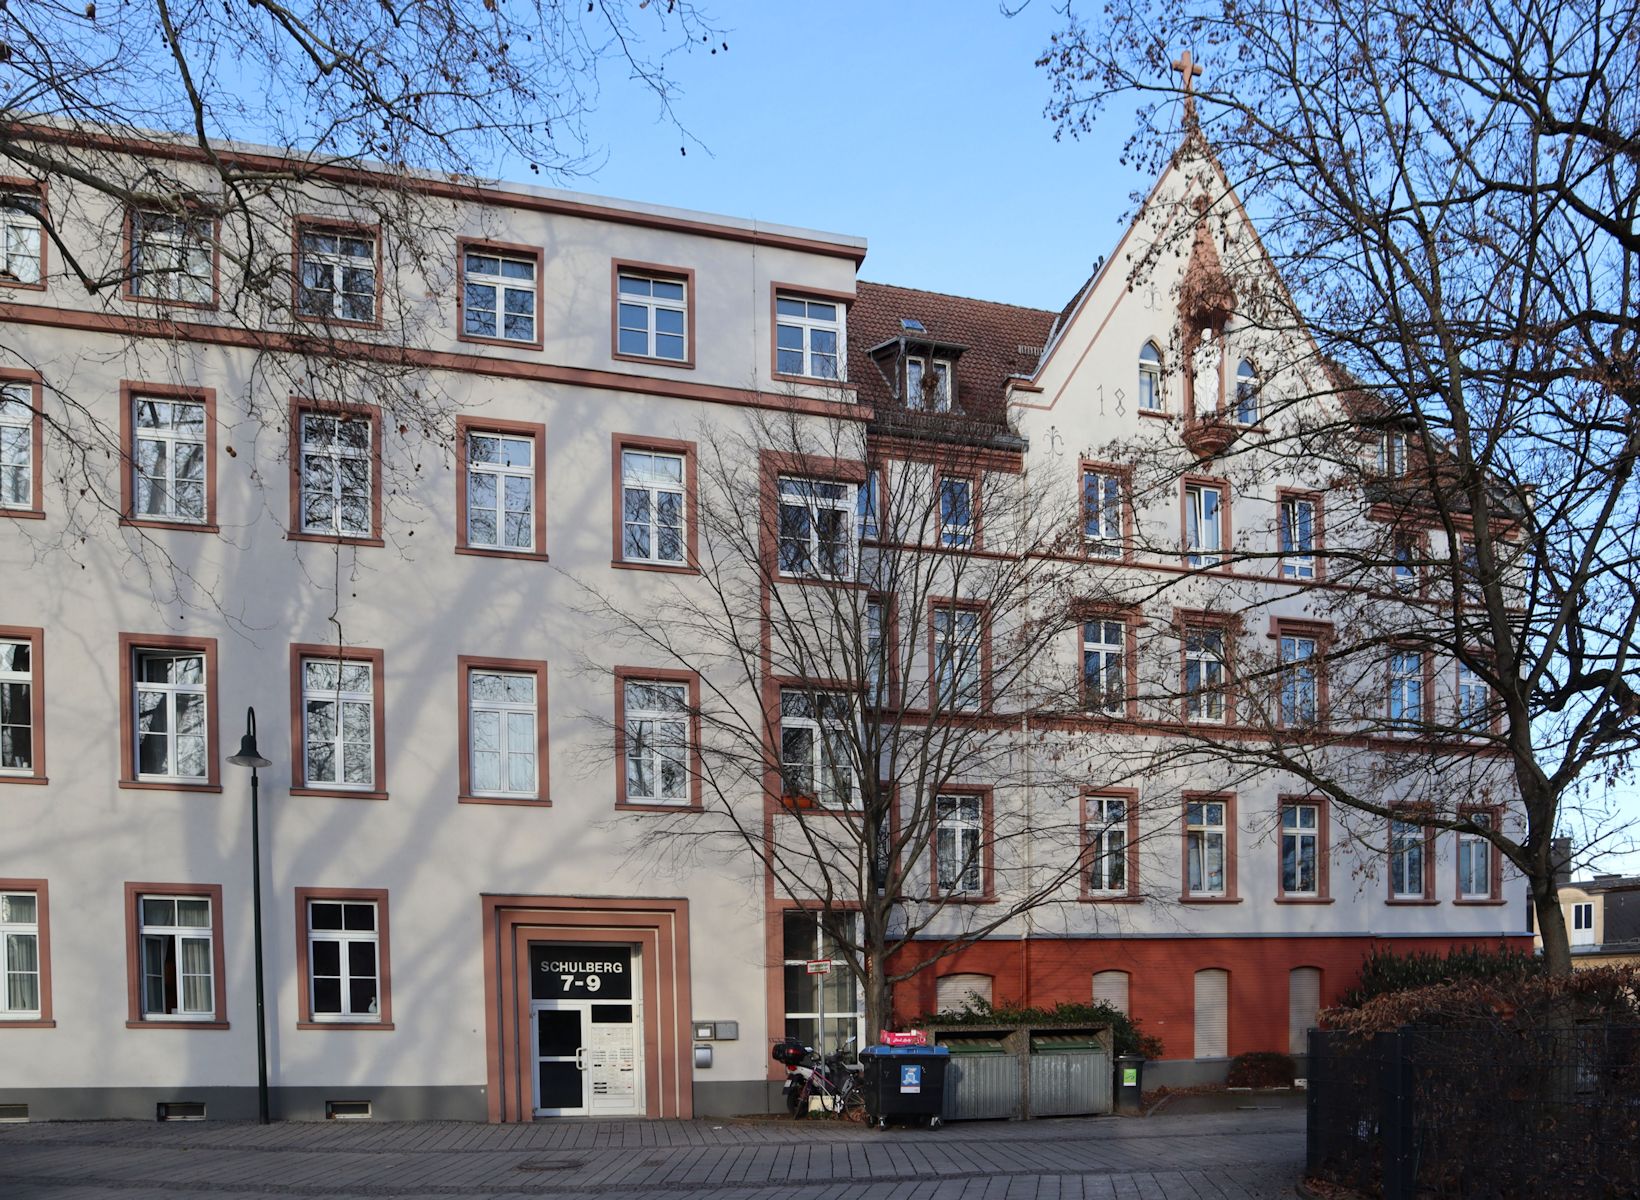 ehemaliges Haus der Barmherzigen Brüder in Wiesbaden, heute eine Schule